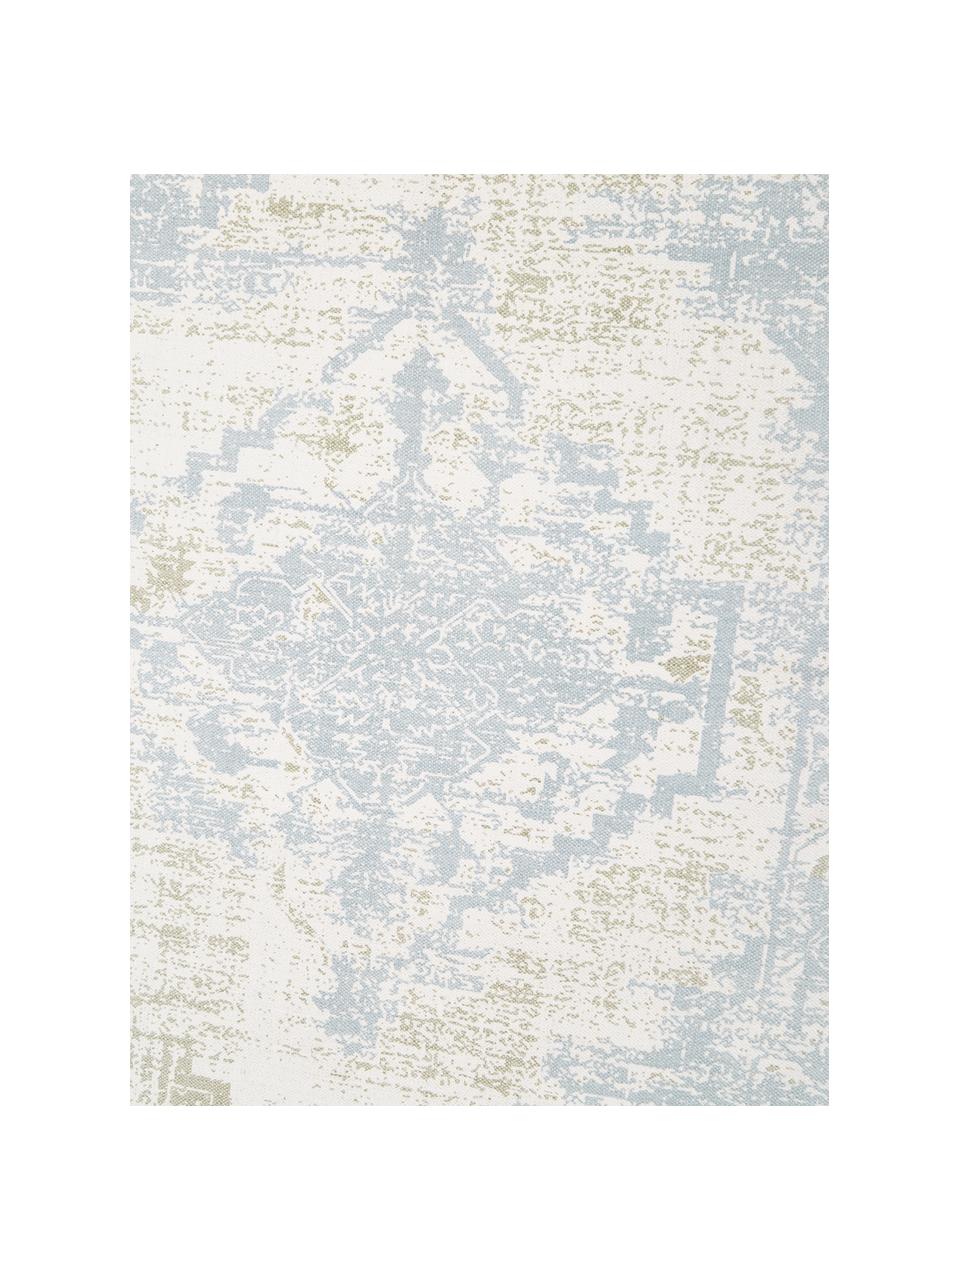 Dünner Baumwollteppich Jasmine in Beige/Blau im Vintage-Style, handgewebt, Blau- und Weißtöne, B 70 x L 140 cm (Größe XS)